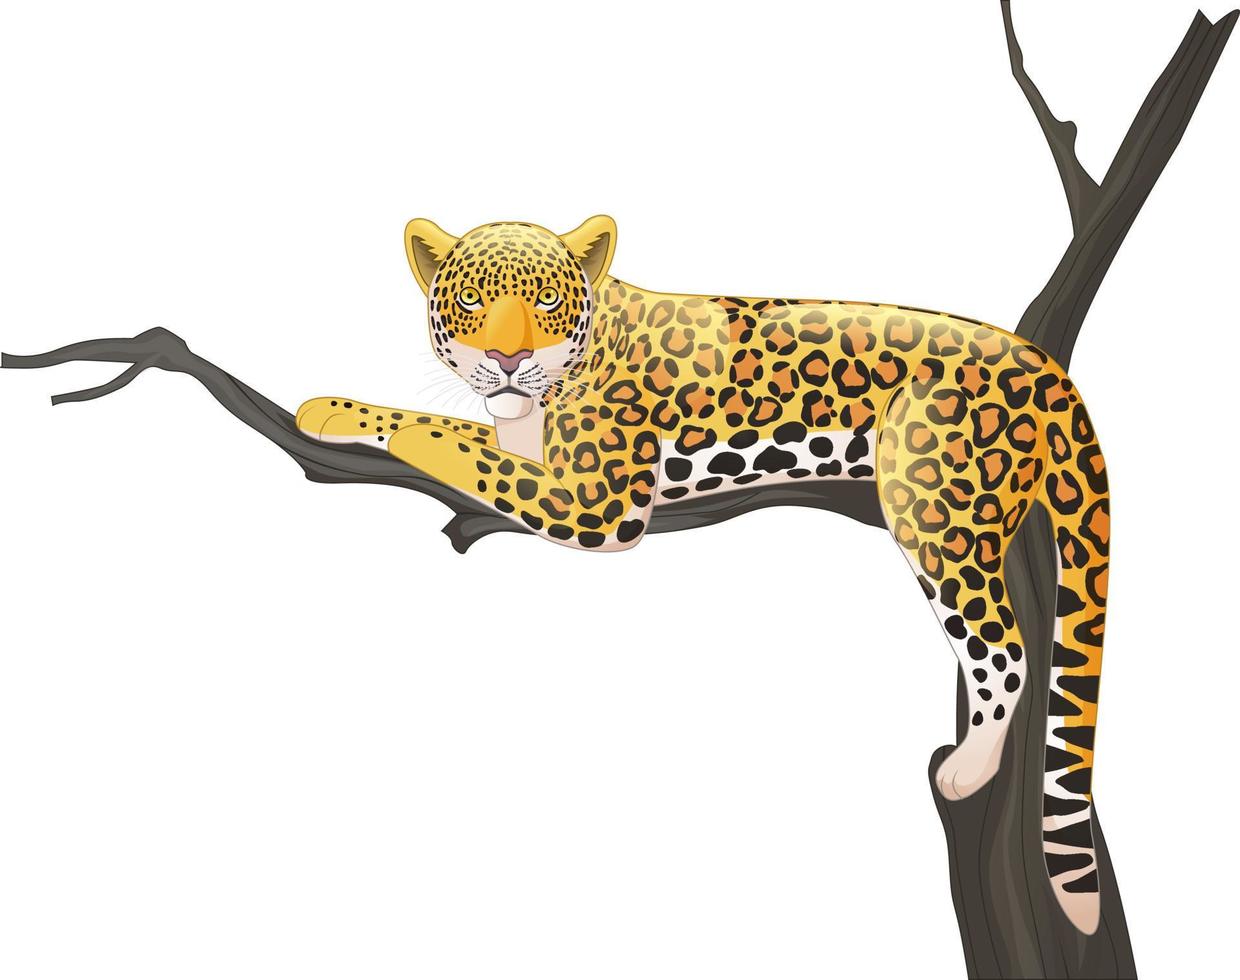 léopard de dessin animé allongé sur une branche d'arbre vecteur